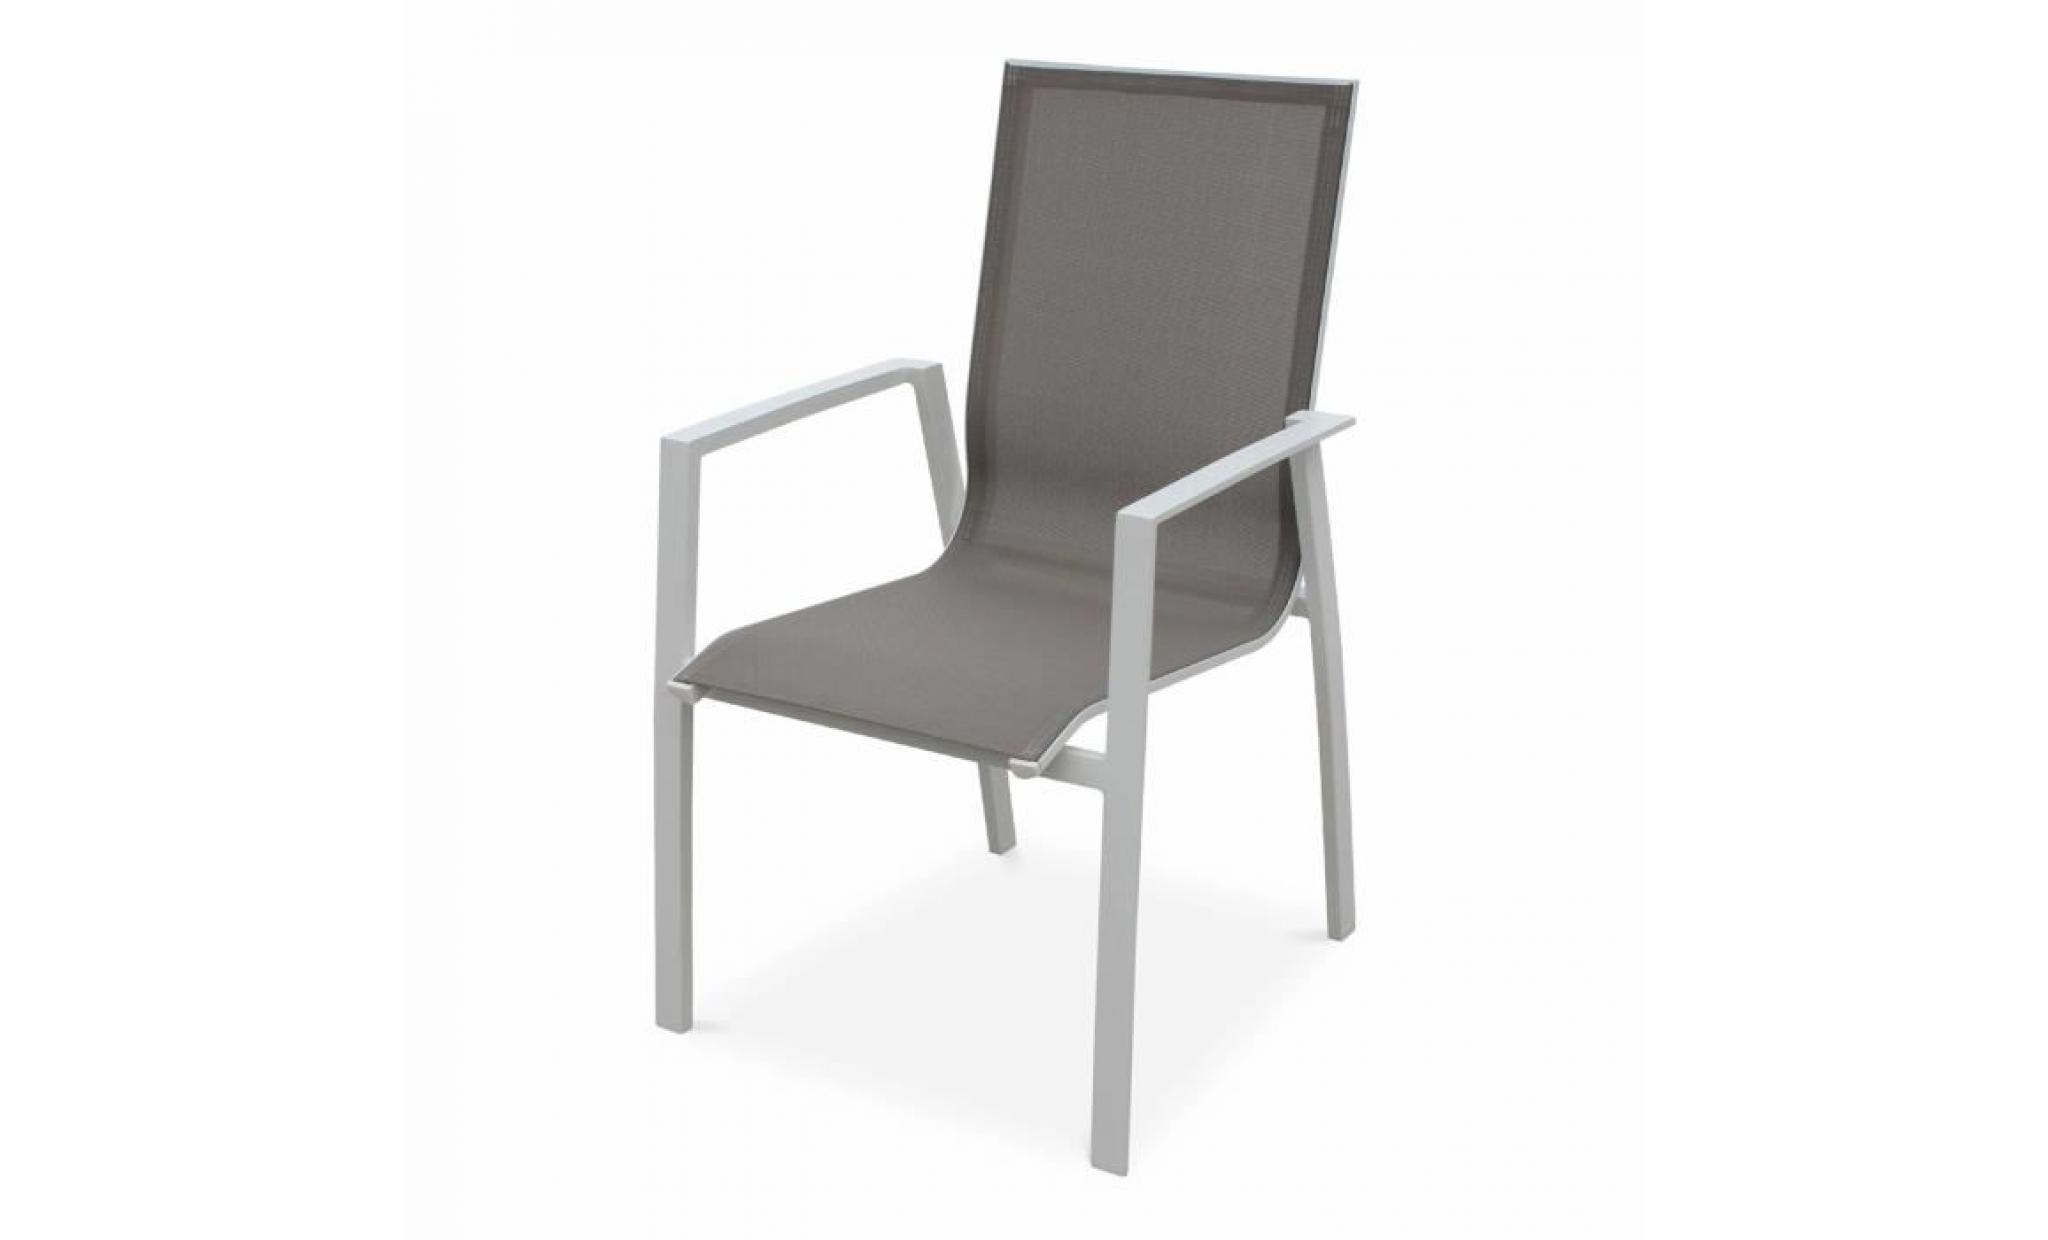 lot de 2 fauteuils   washington taupe   en aluminium blanc et textilène taupe, empilables pas cher